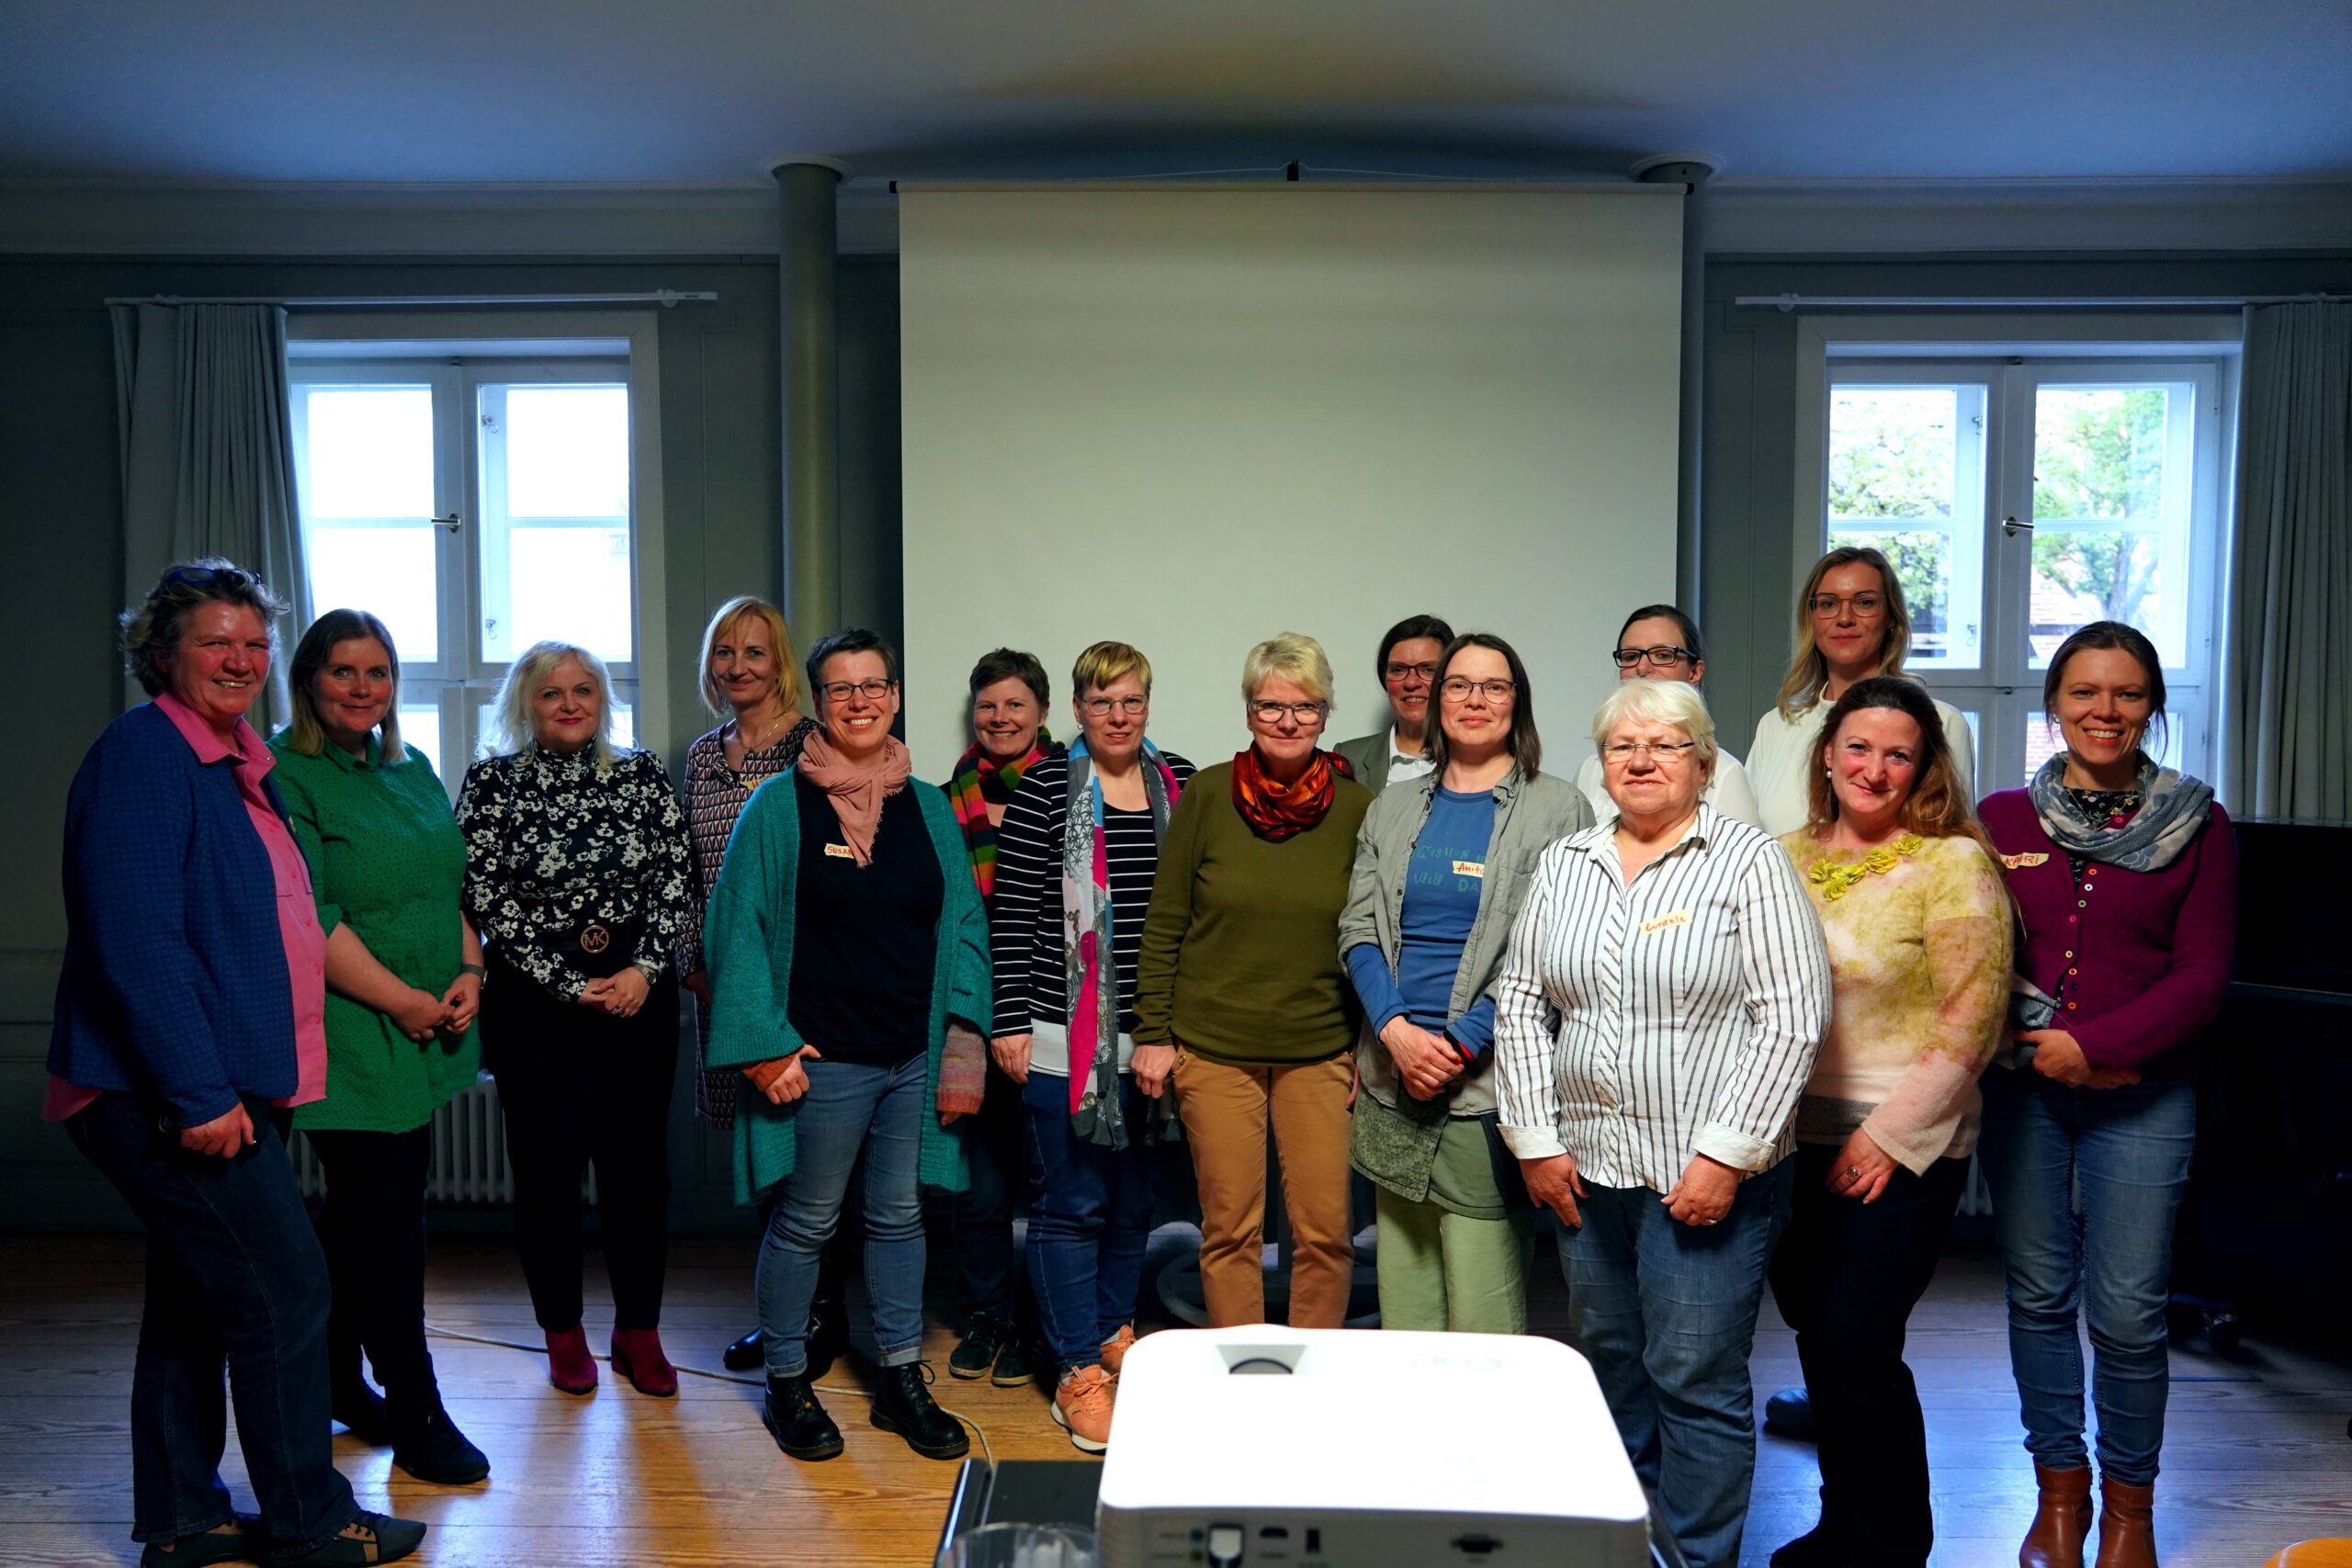 Frauen engagieren sich für Frauen: Neuer ZONTA Club soll in Schwerin gegründet werden 